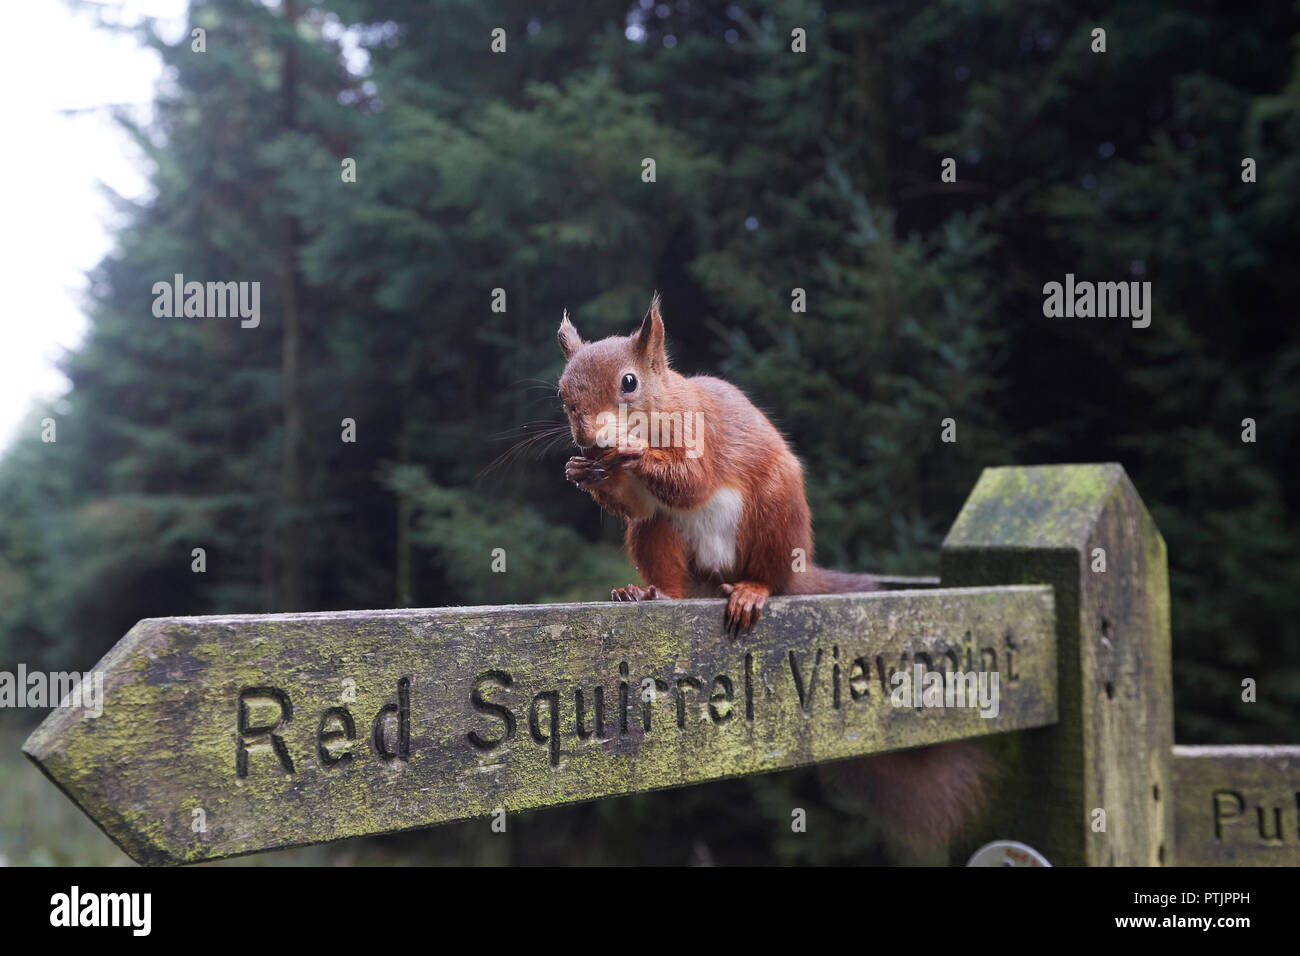 L'Écureuil roux, Sciurus vulgaris, manger une noisette sur un sentier public Vue d'Écureuil rouge sign post, Snaizeholme, près de Hawes, Yorkshire Dales Nati Banque D'Images